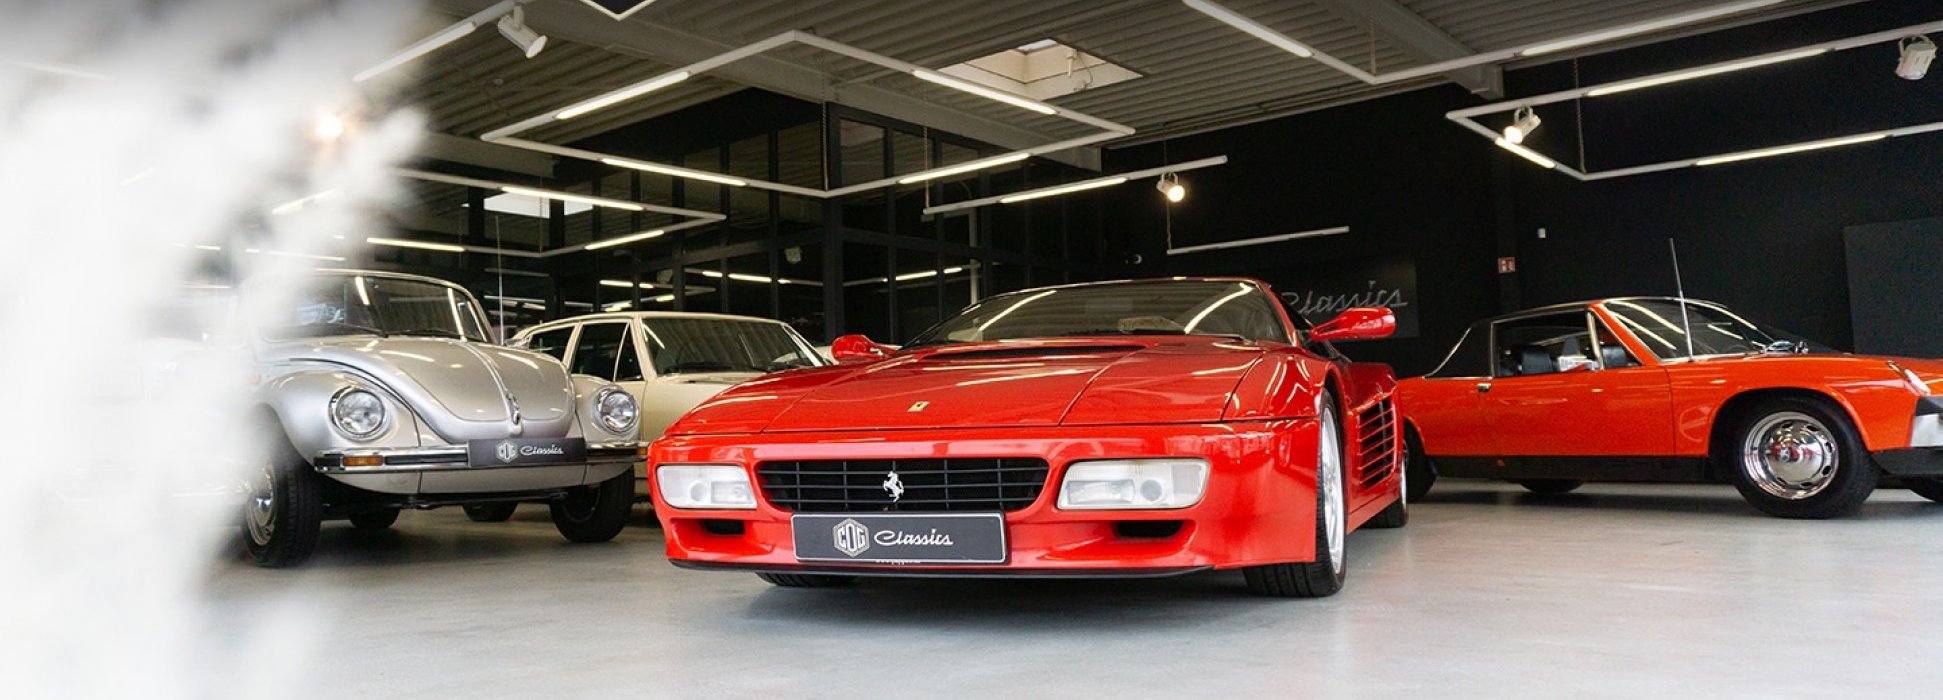 Ferrari 512 TR 1